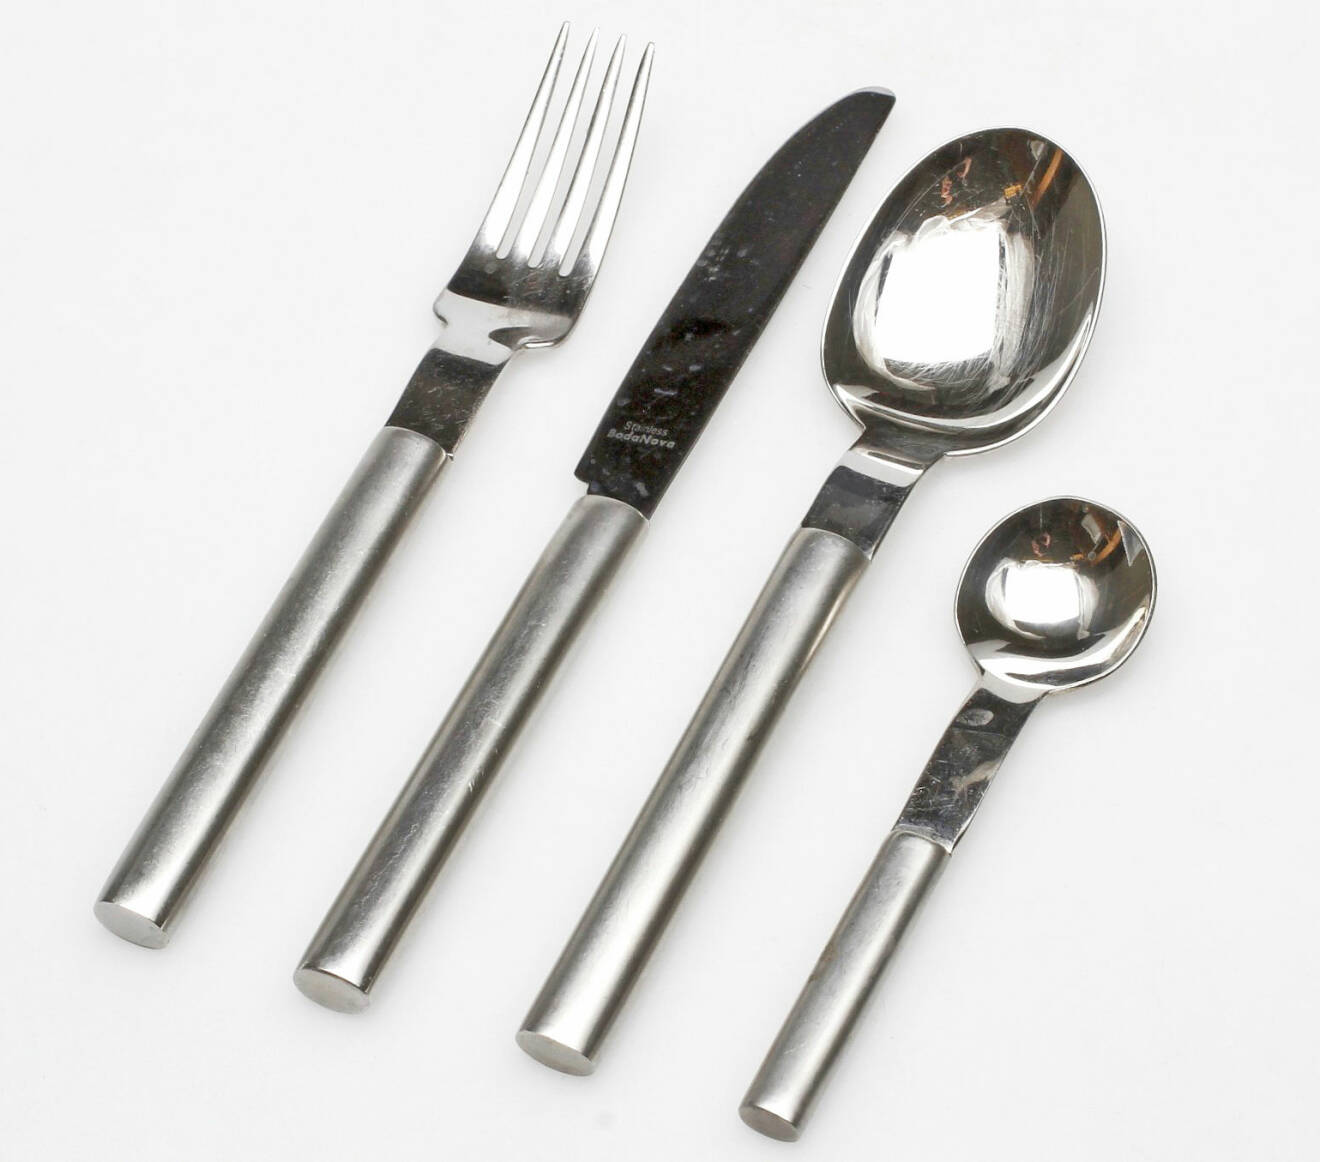 Gaffel, kniv, matsked och tesked i silver från serien Boda Nova.